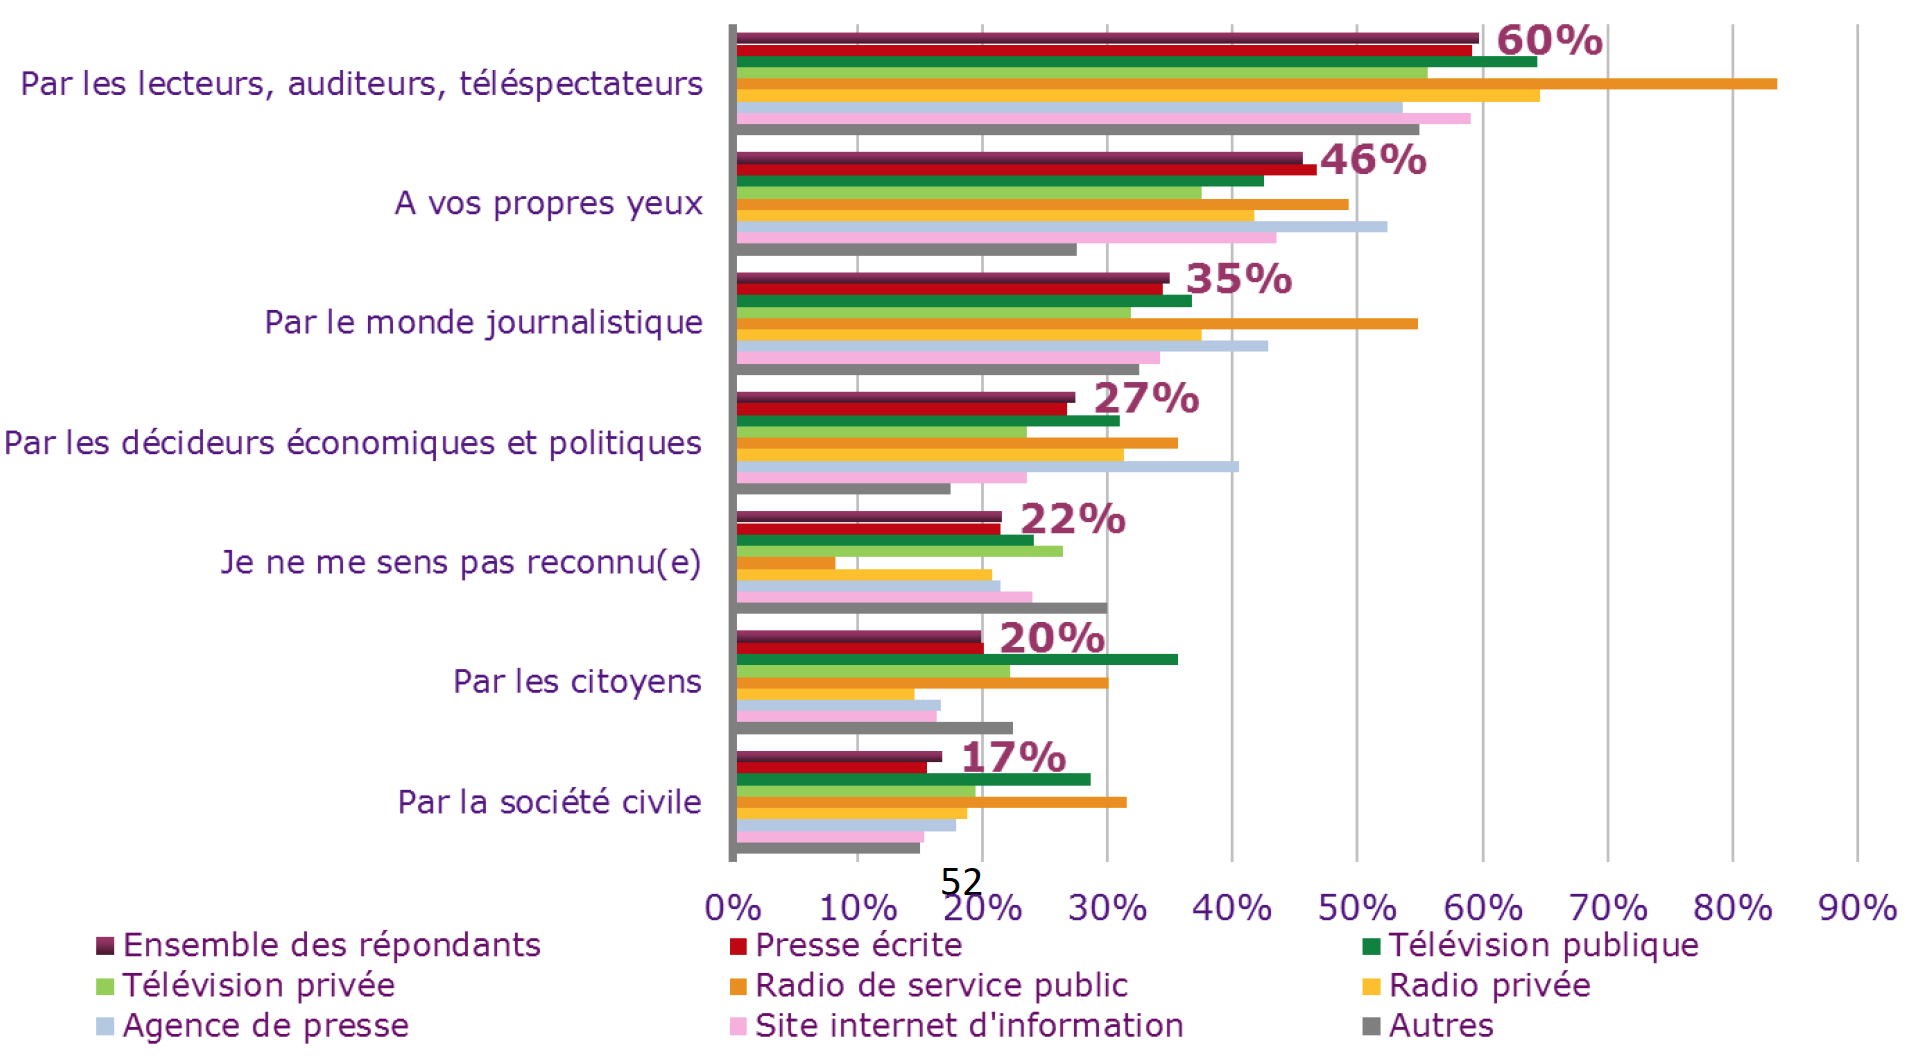 En moyenne, 60 % des journalistes ressentent positivement le soutien de leurs publics, avec même un sommet à 80 % dans les radios publiques